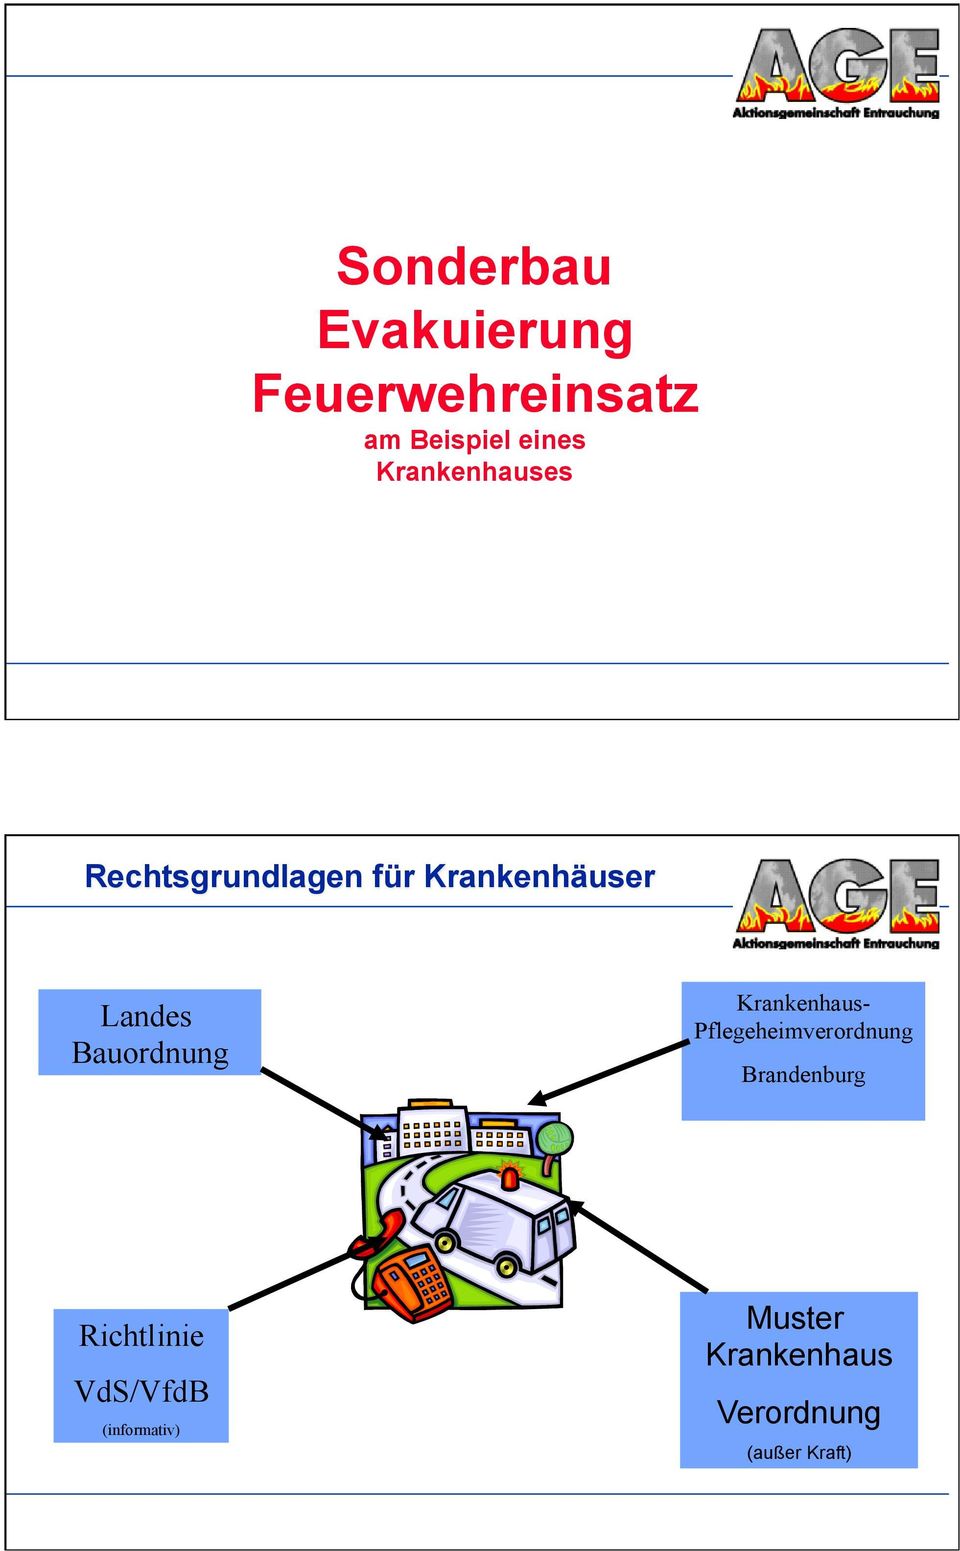 Bauordnung Krankenhaus- Pflegeheimverordnung Brandenburg